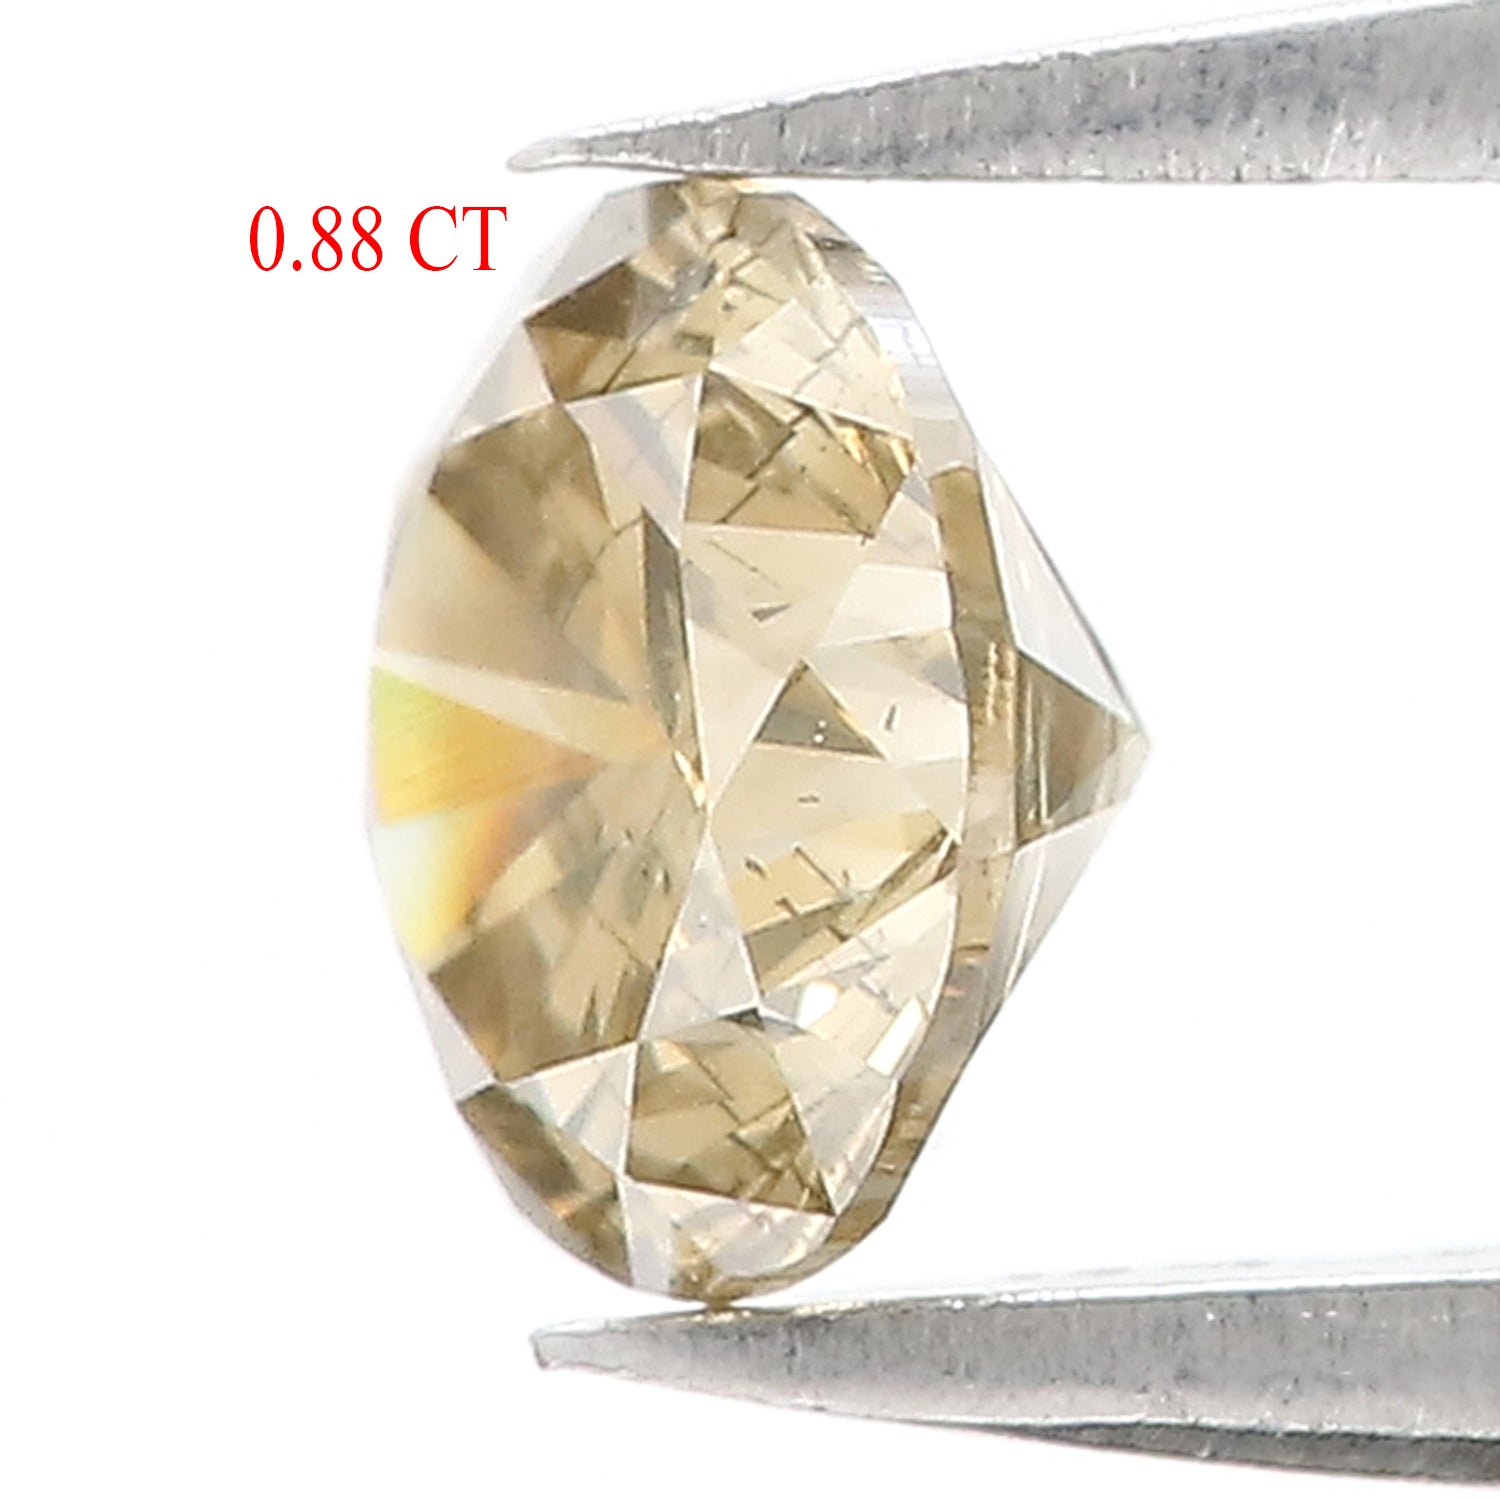 0.88 Ct Natural Loose Round Brilliant Cut Diamond Yellow Color Round Diamond 6.00 MM Natural Diamond Yellow Color Round Shape Diamond QL3061